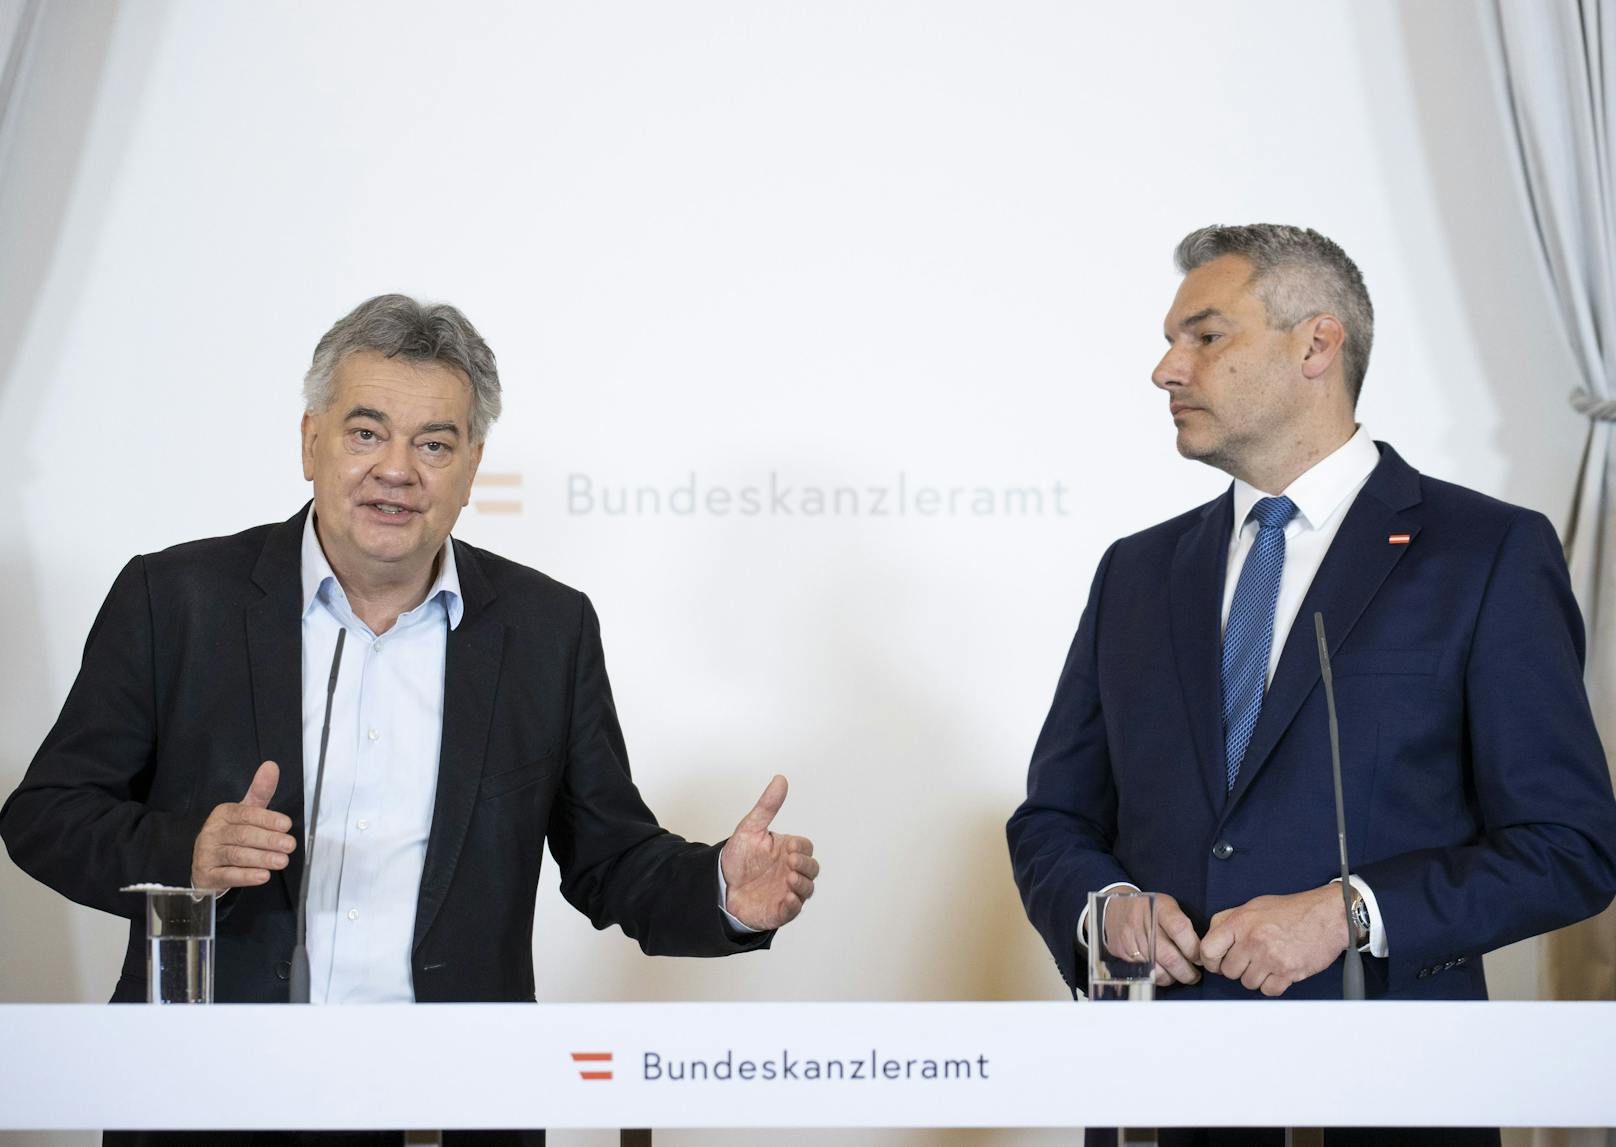 v.l.n.r.: Vizekanzler Werner Kogler (GRÜNE) sowie Bundeskanzler Karl Nehammer (ÖVP) am 14. Juni 2022 während der Pressekonferenz zum 28 Milliarden Euro schweren "Geld-zurück-Paket" gegen die Teuerung.